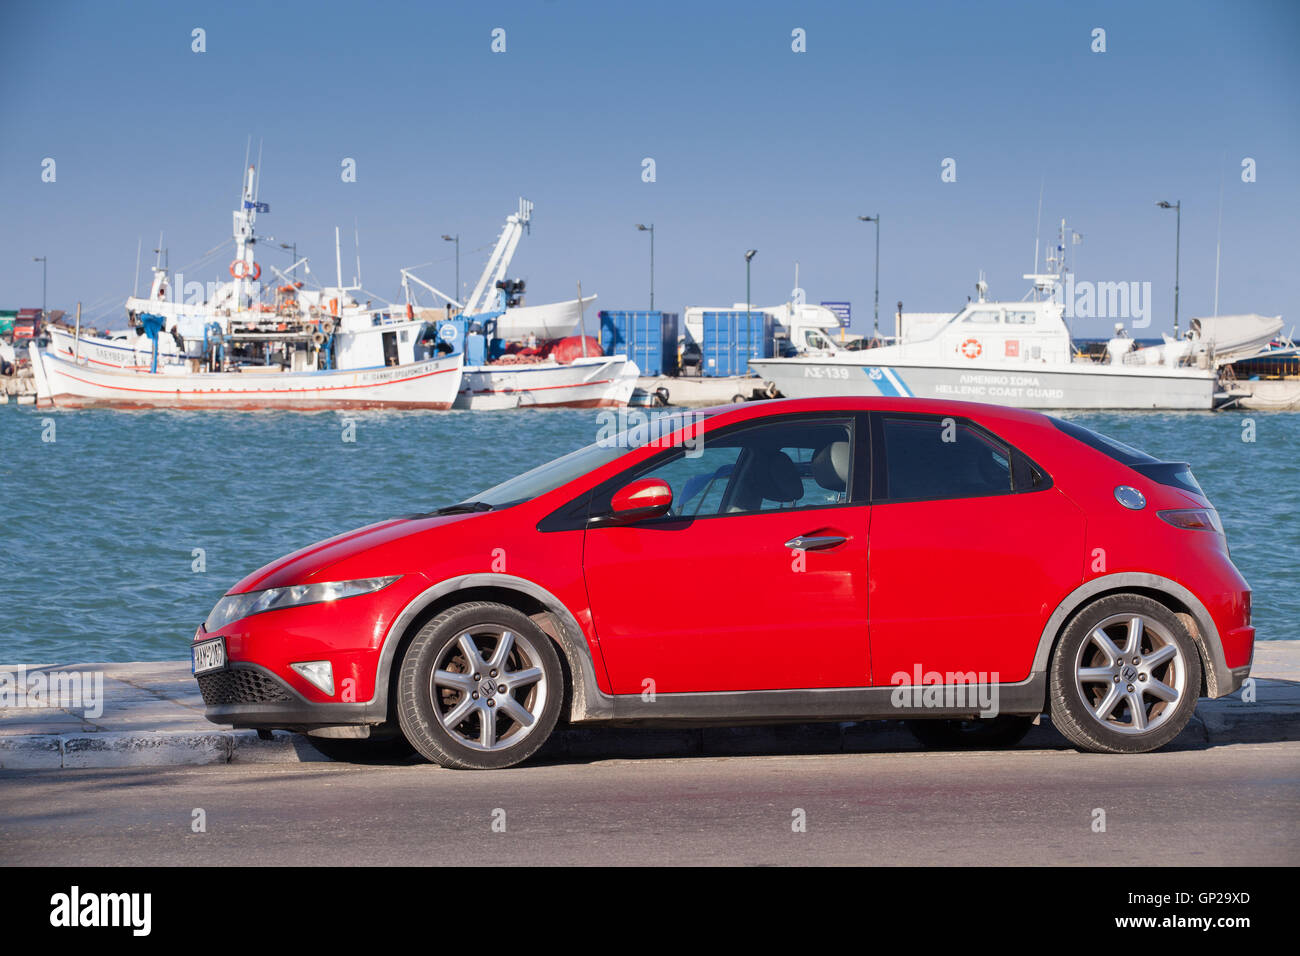 Zakynthos, Griechenland - 14. August 2016: Rot Honda Civic Auto steht geparkt auf der Küstenstraße. Achte Generation Fließheck. Achter-ge Stockfoto